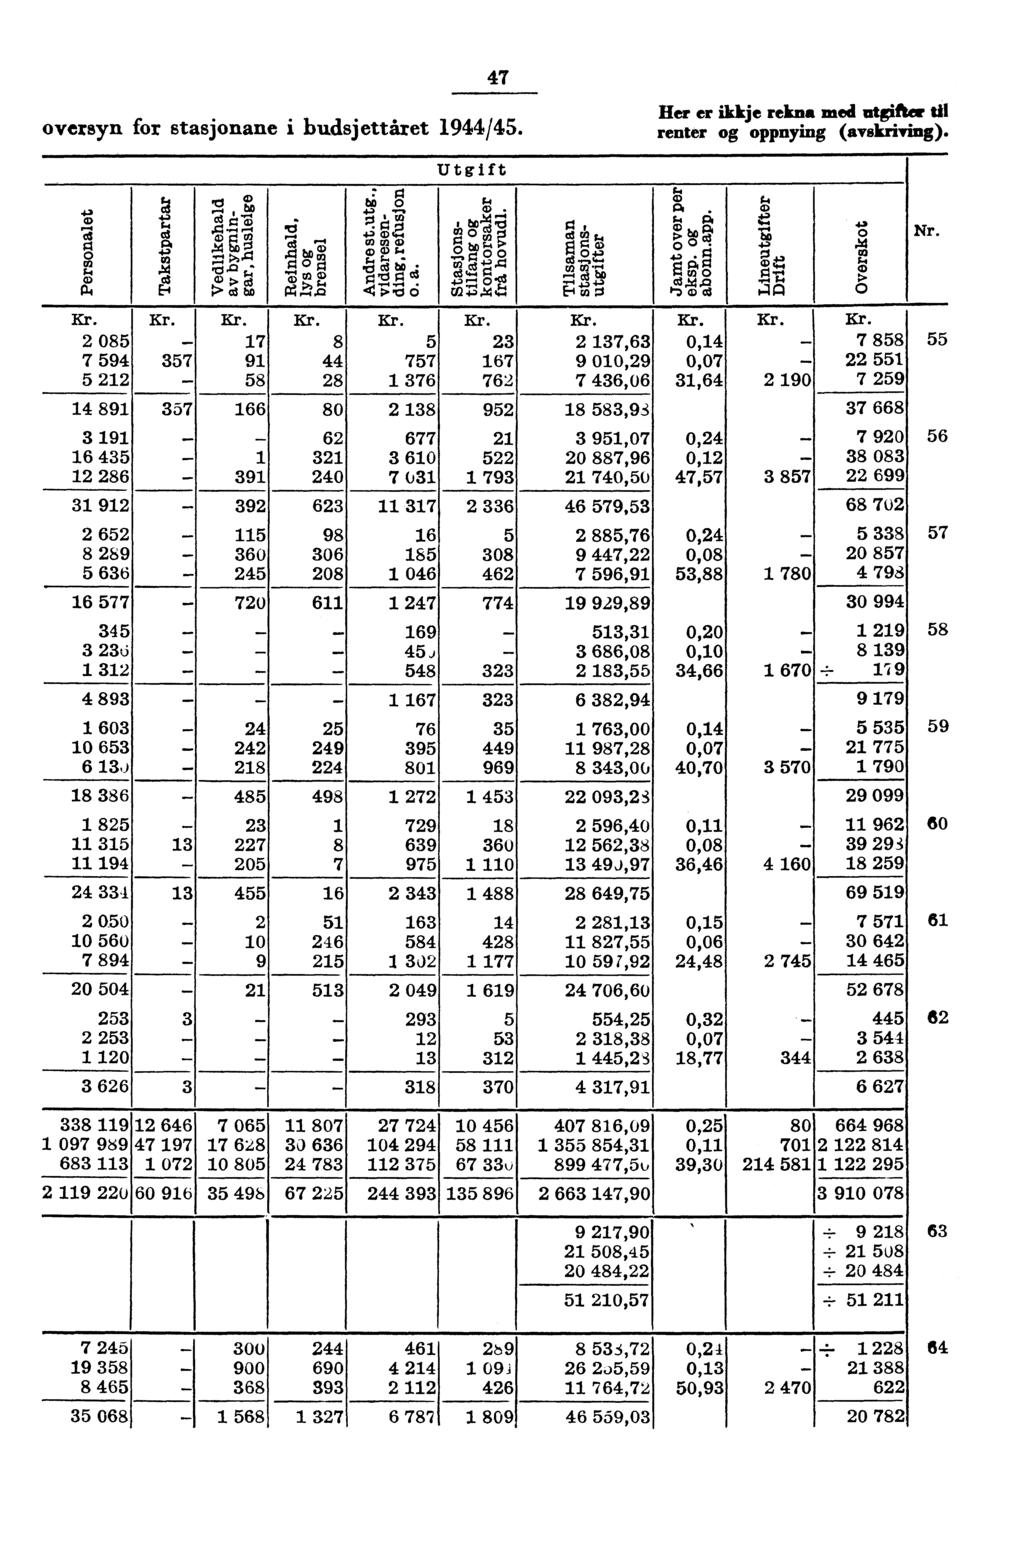 7 Iler er ikkje rekna med utgifter til oversyn for stasjonane i budsjettåret 9/5. renter og oppnying (avskriving). 85 7 59 5 89 57 57 7 9 58 xi bog? g "6.